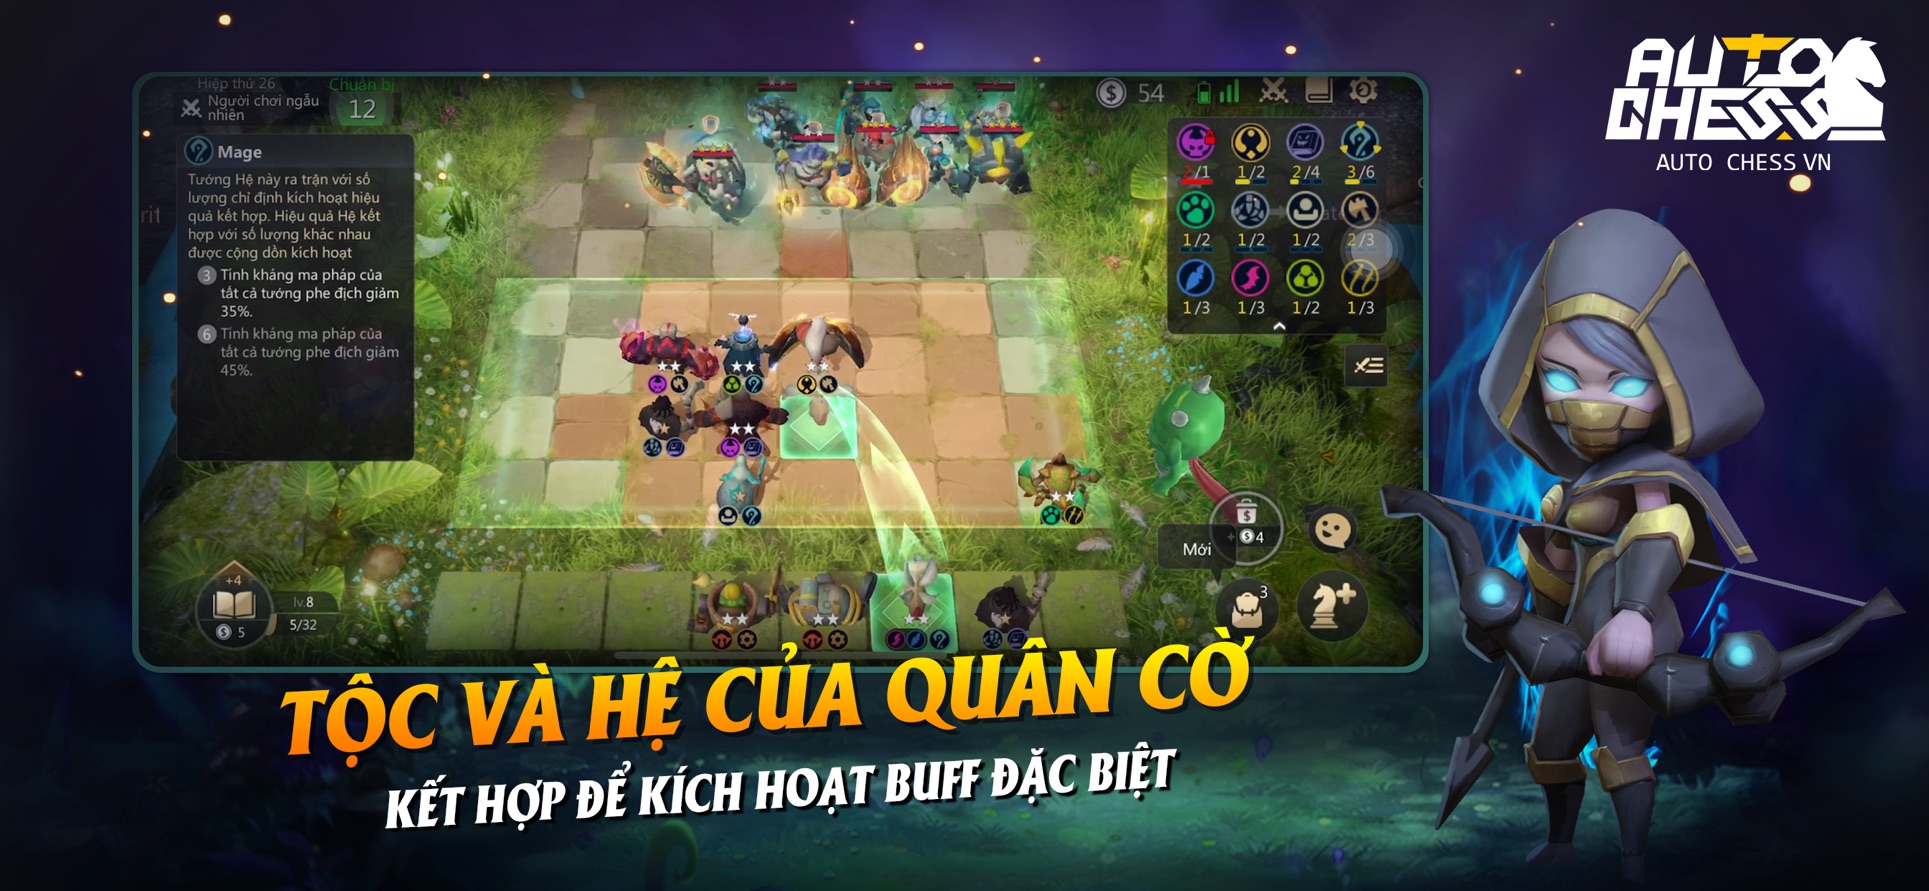 VNG chính thức phát hành game Auto Chess Mobile phiên bản Việt